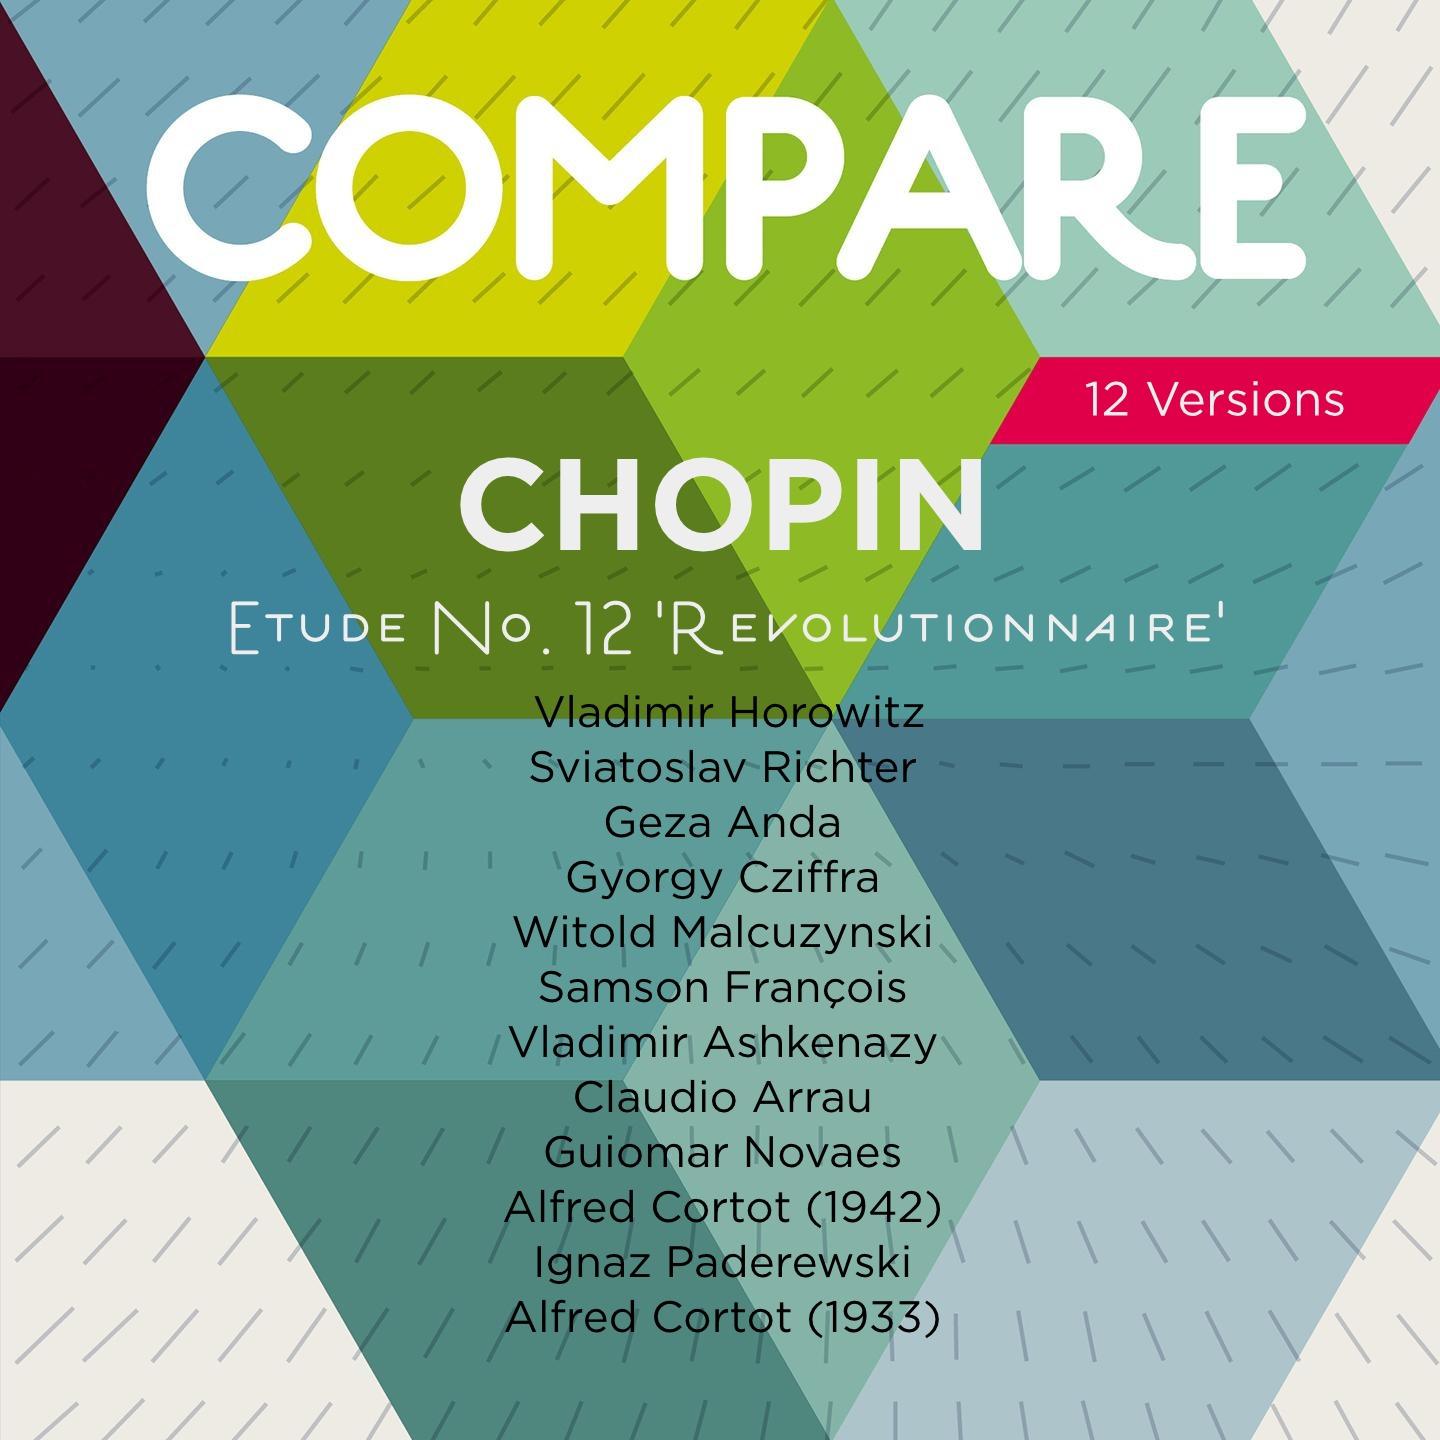 Chopin: Etudes, Op. 10 No. 12 " Revolutionary", Horowitz vs. Richter vs. Anda vs. Cziffra vs. Malcuzynski vs. Fran ois vs. Ashkenazy vs. Arrau vs. Novaes vs. Cortot vs. Paderewski